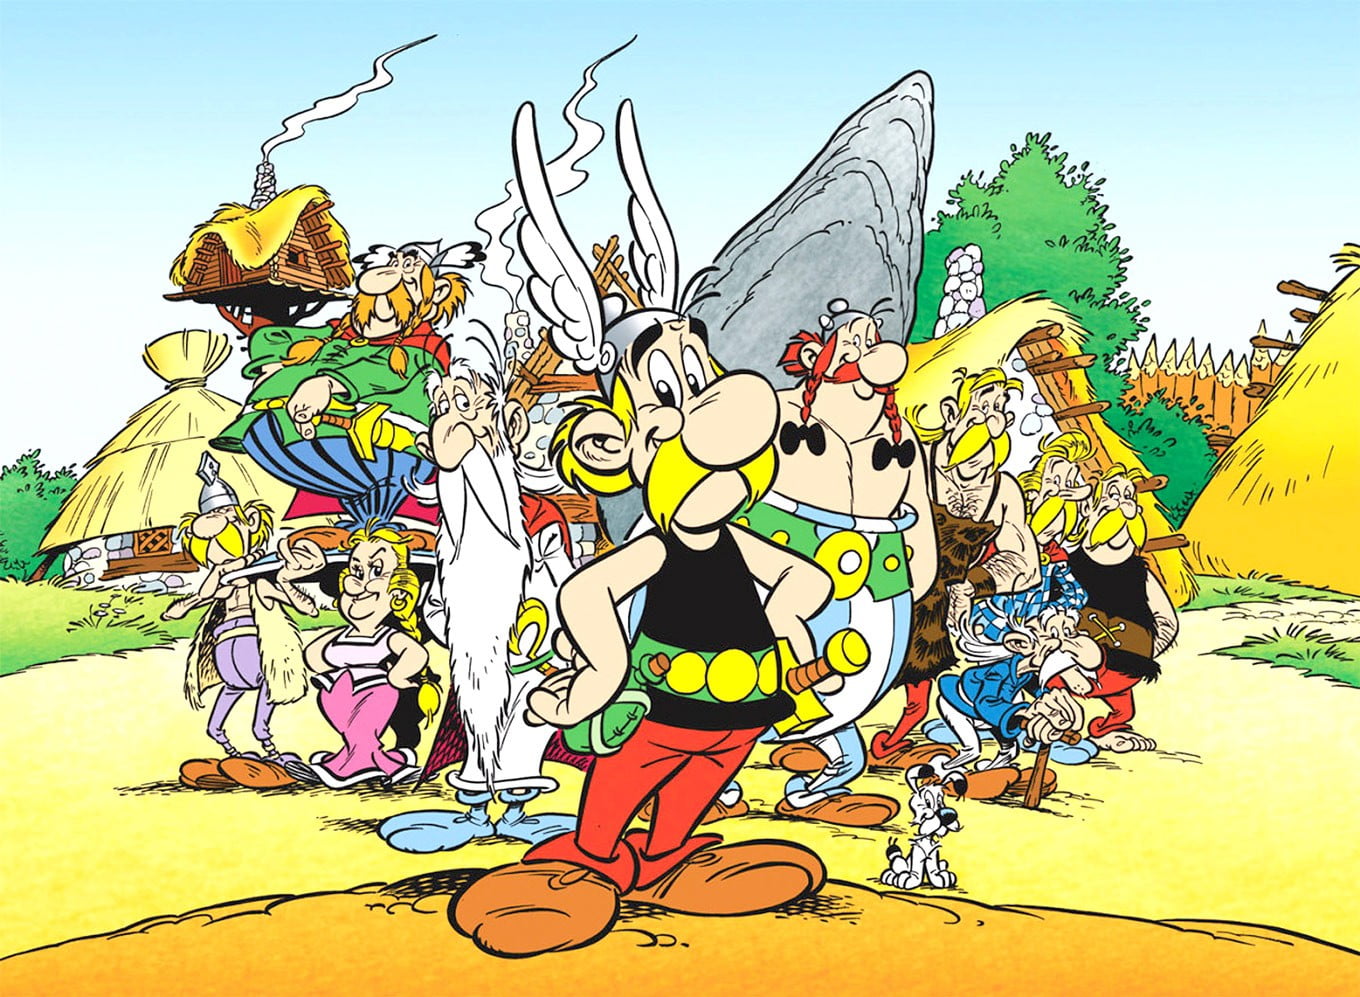 Astérix Obélix et Compagnie n°23 (Asterix, 23) (French Edition)